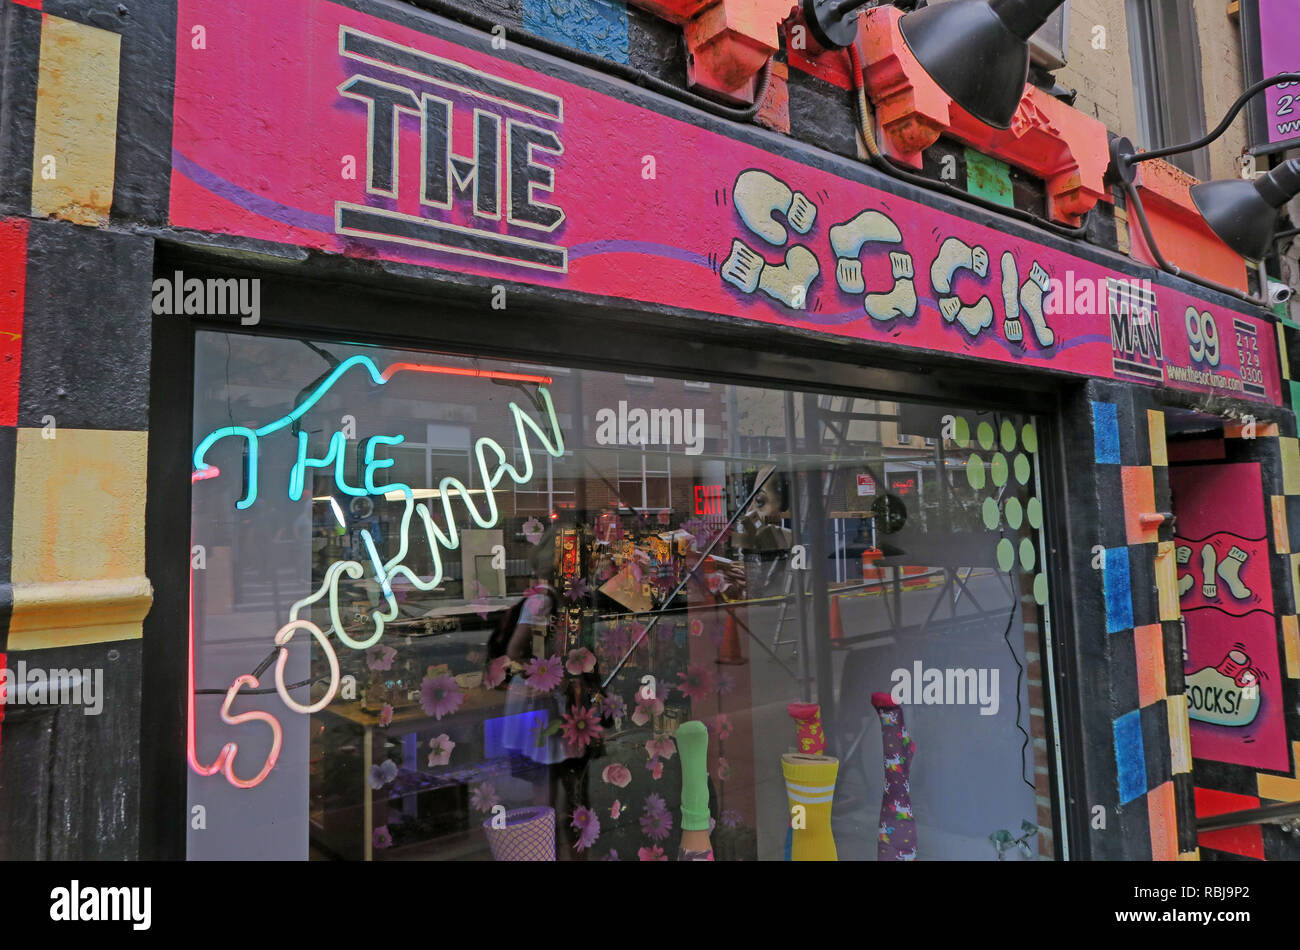 La boutique rose sockman, déjanté, détail 99 Pl St Marks, New York, NYC, USA Banque D'Images